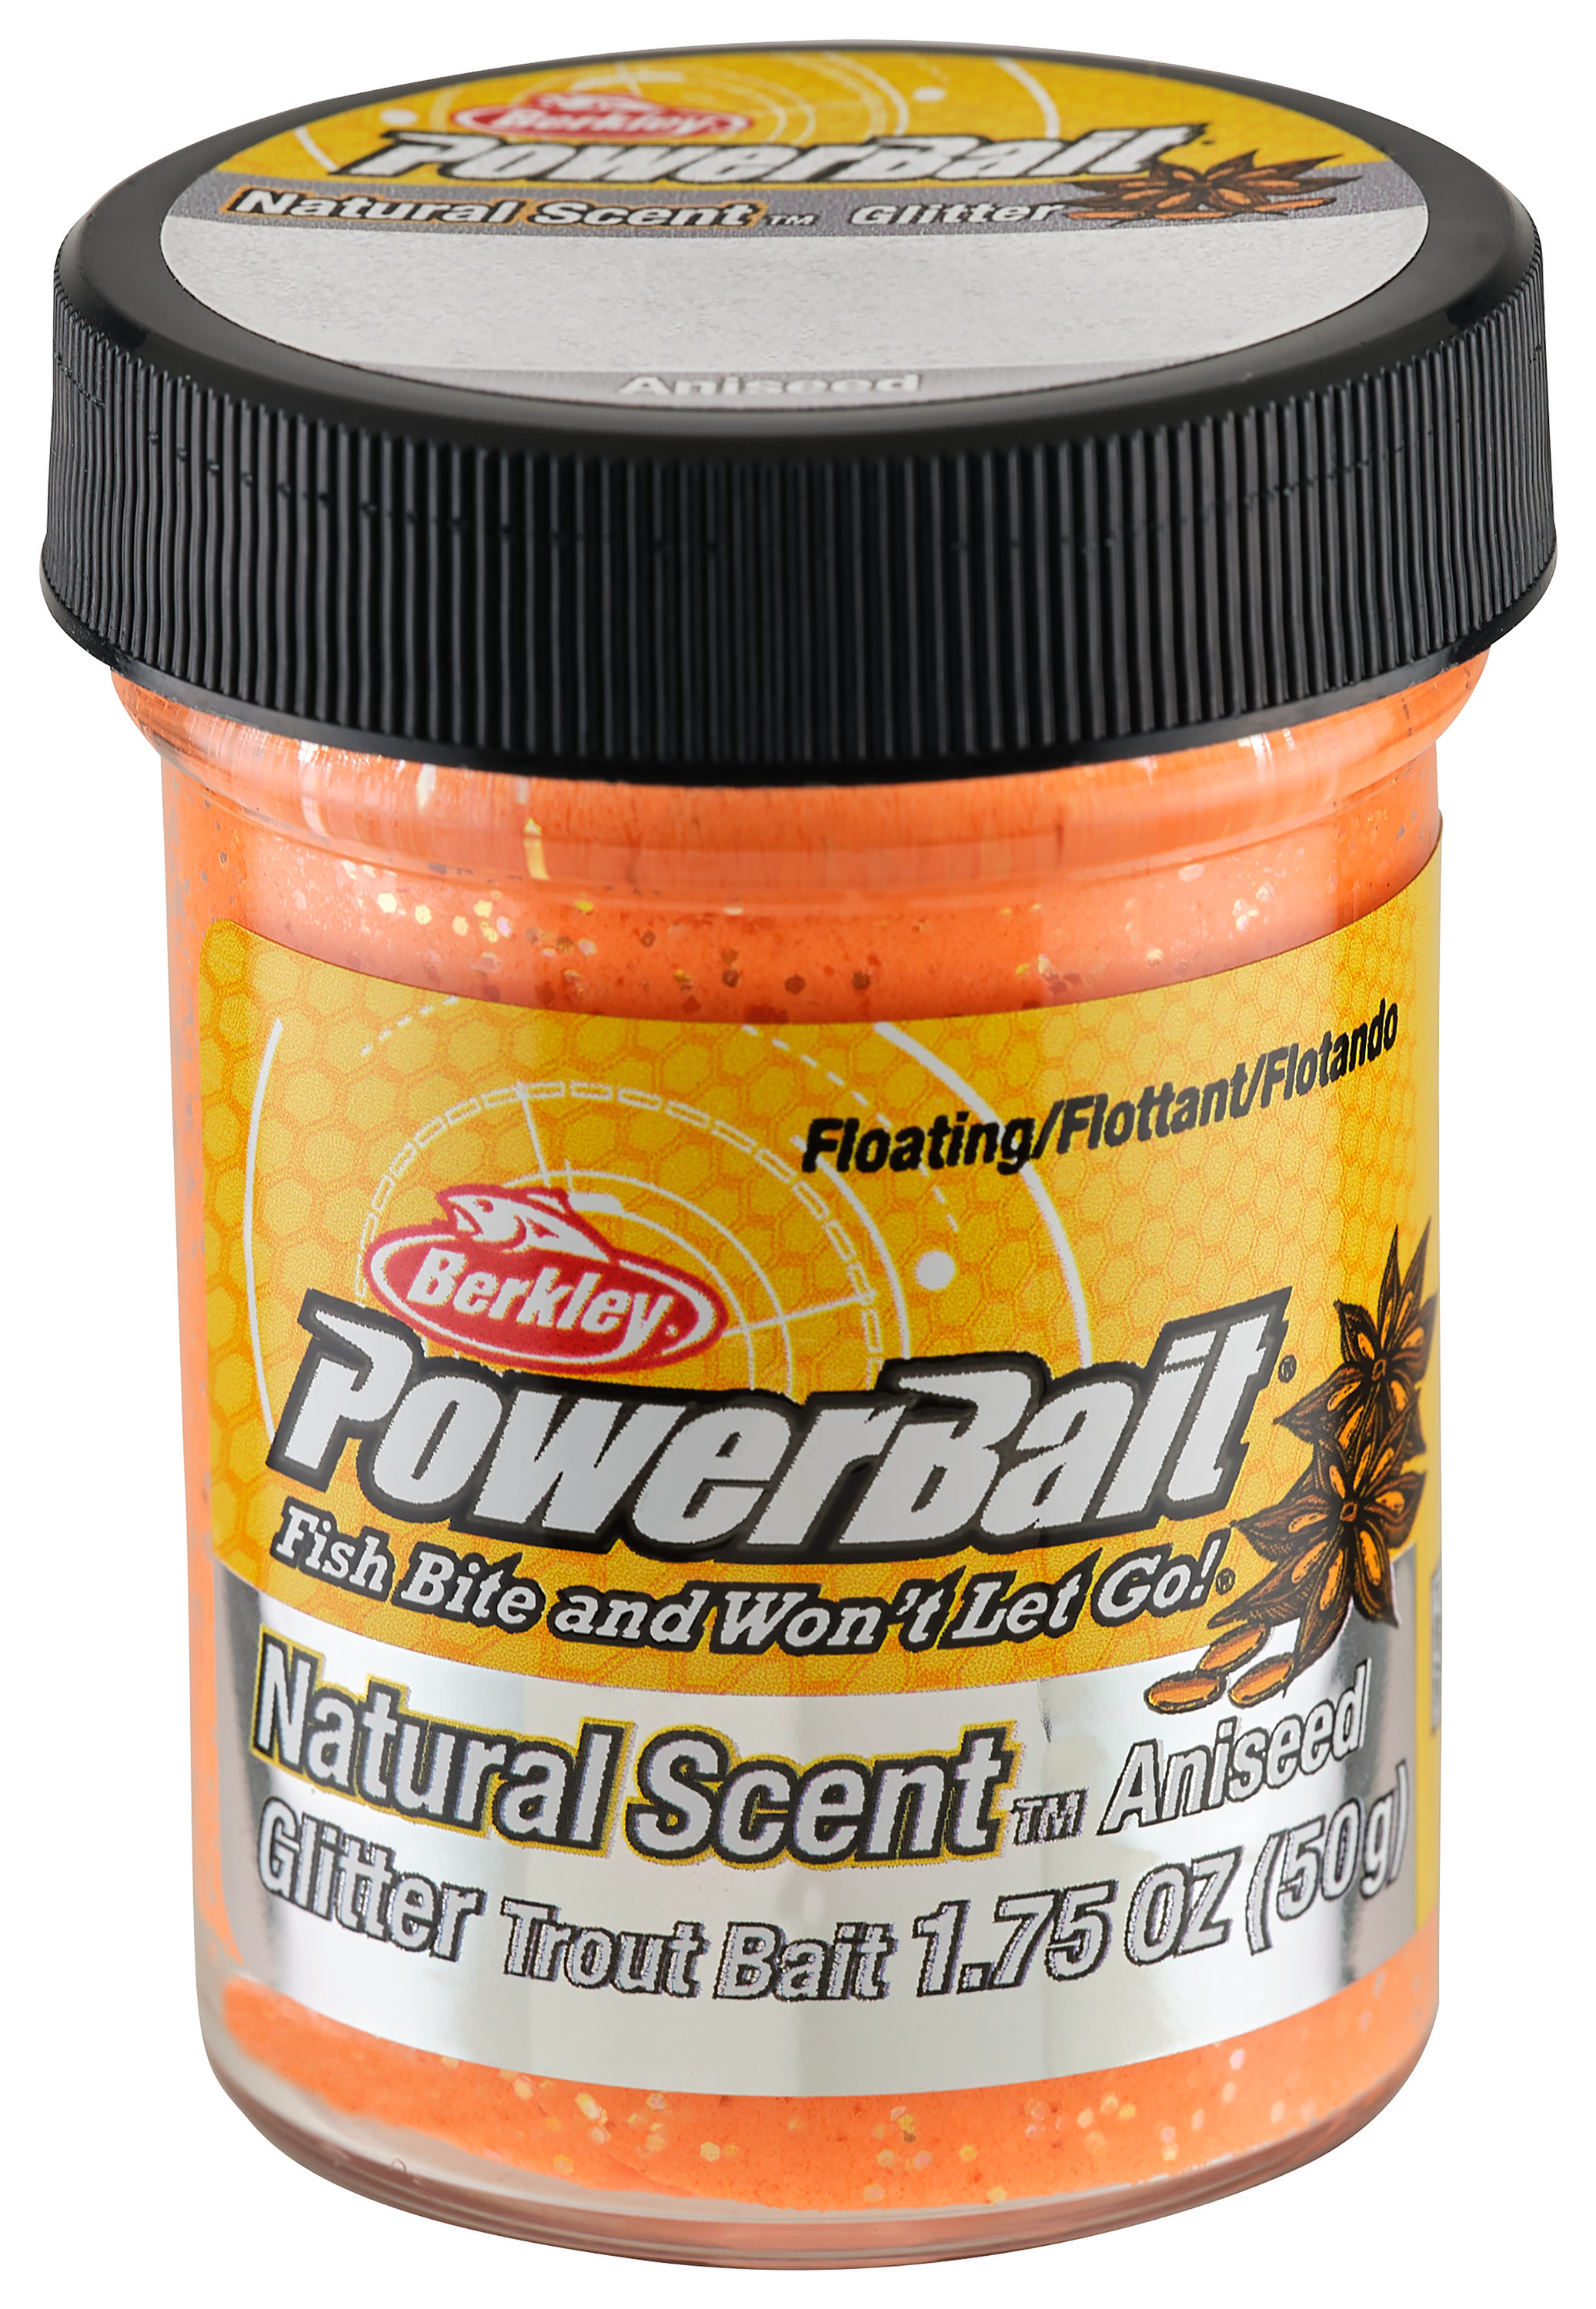 Berkley PowerBait Natural Scent Trout Bait - Corn